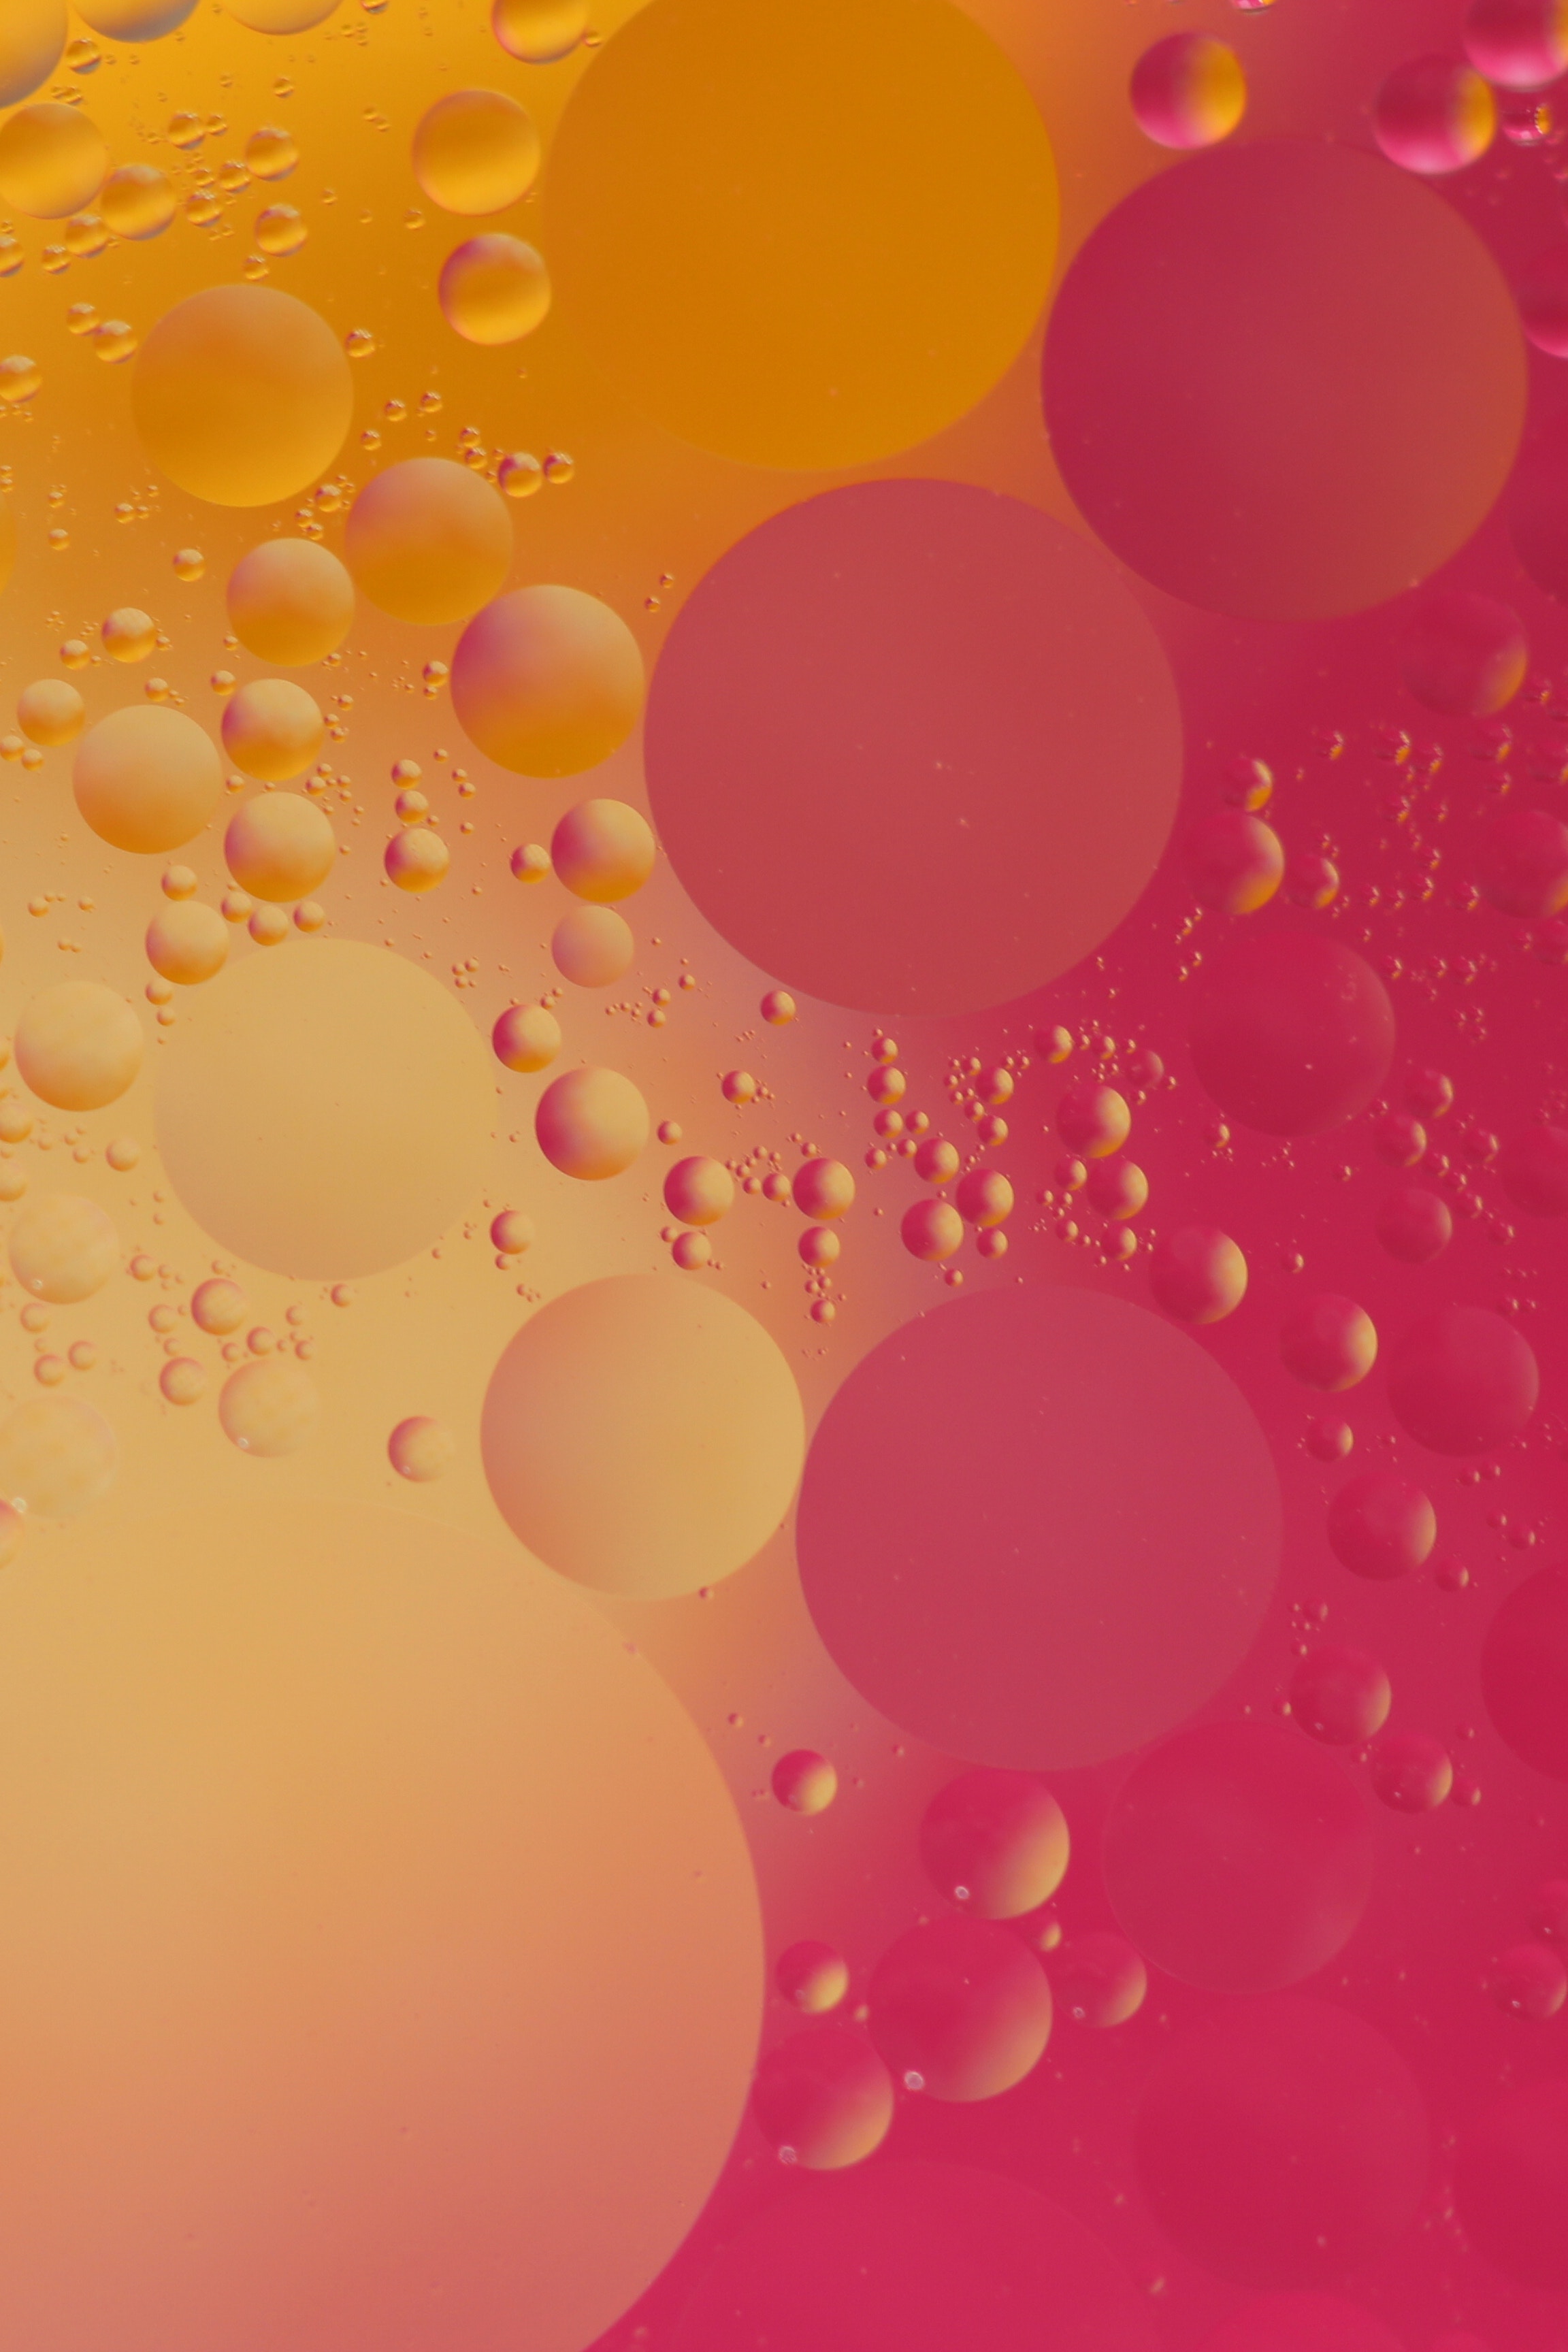 Скачать обои бесплатно Пузыри, Красный, Желтый, Круги, Абстракция, Розовый, Форма картинка на рабочий стол ПК